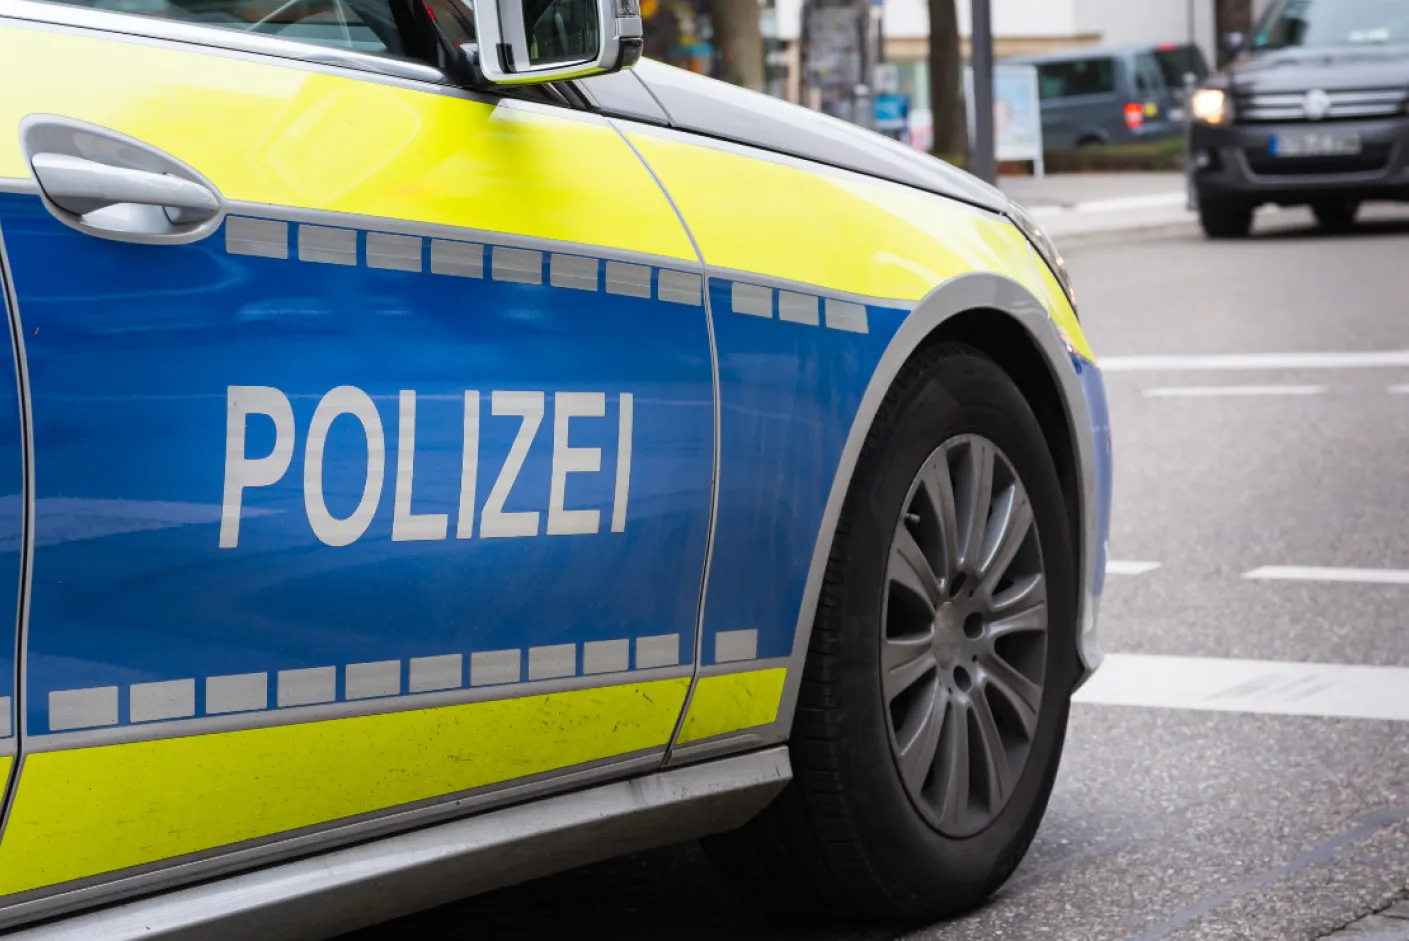 Polizei und Polizisten in Deutschland Polizeidienst